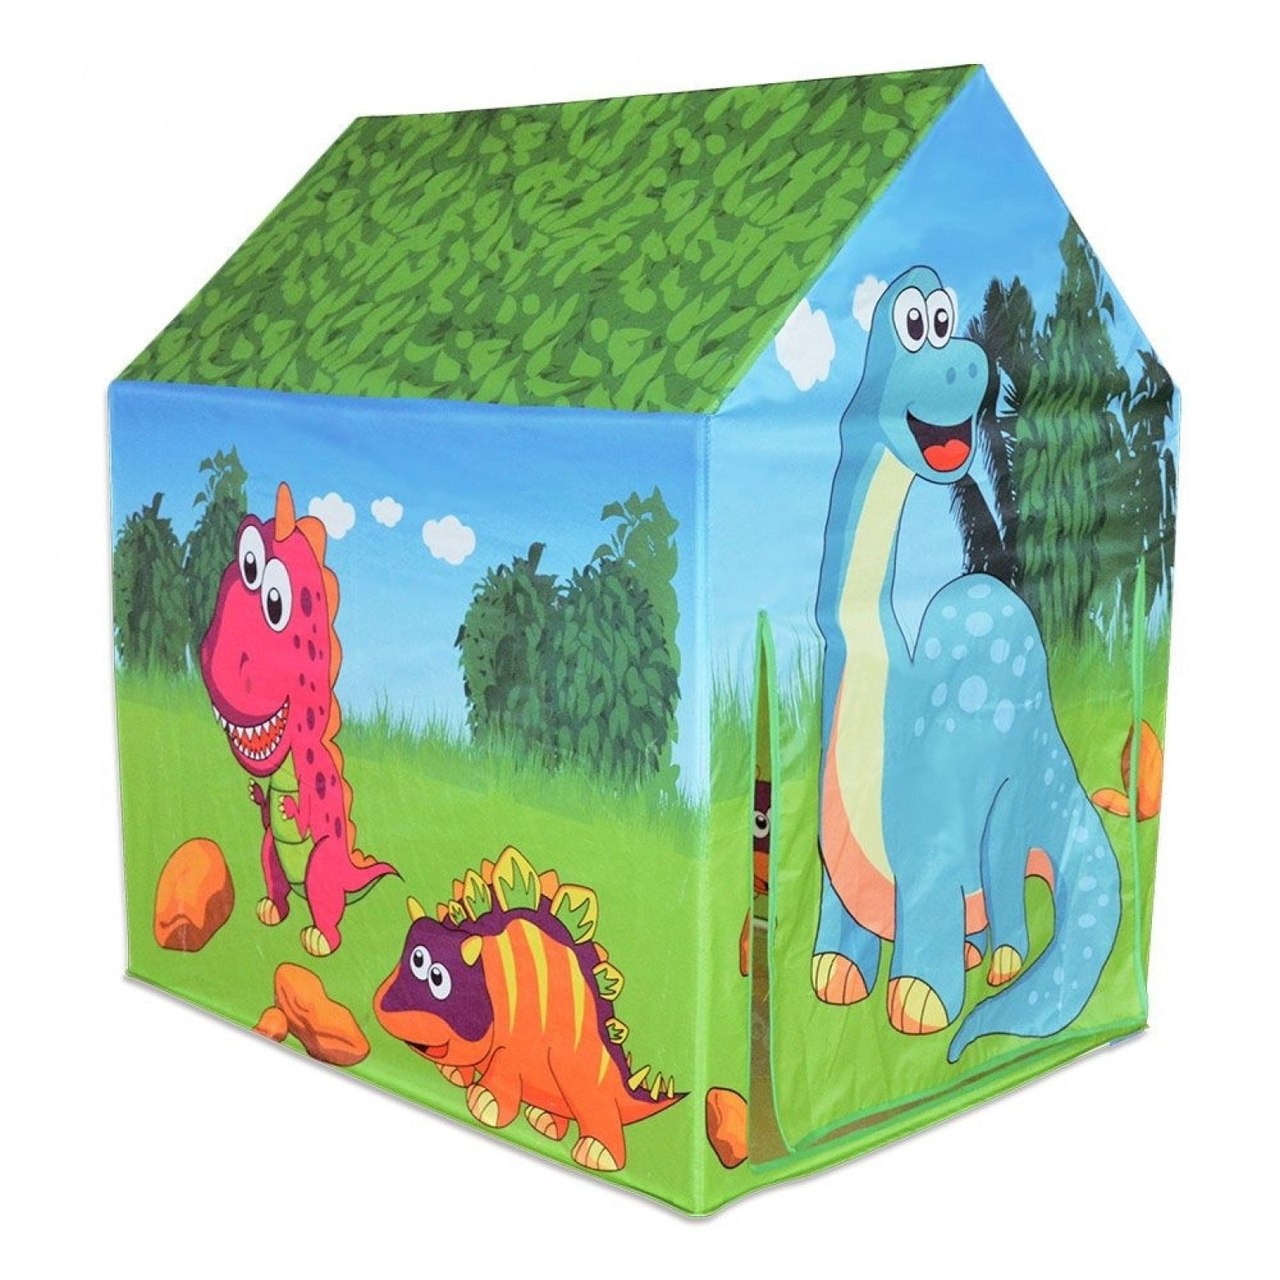 Barraca Infantil Casa do Dinossauro - Dm Toys 5885